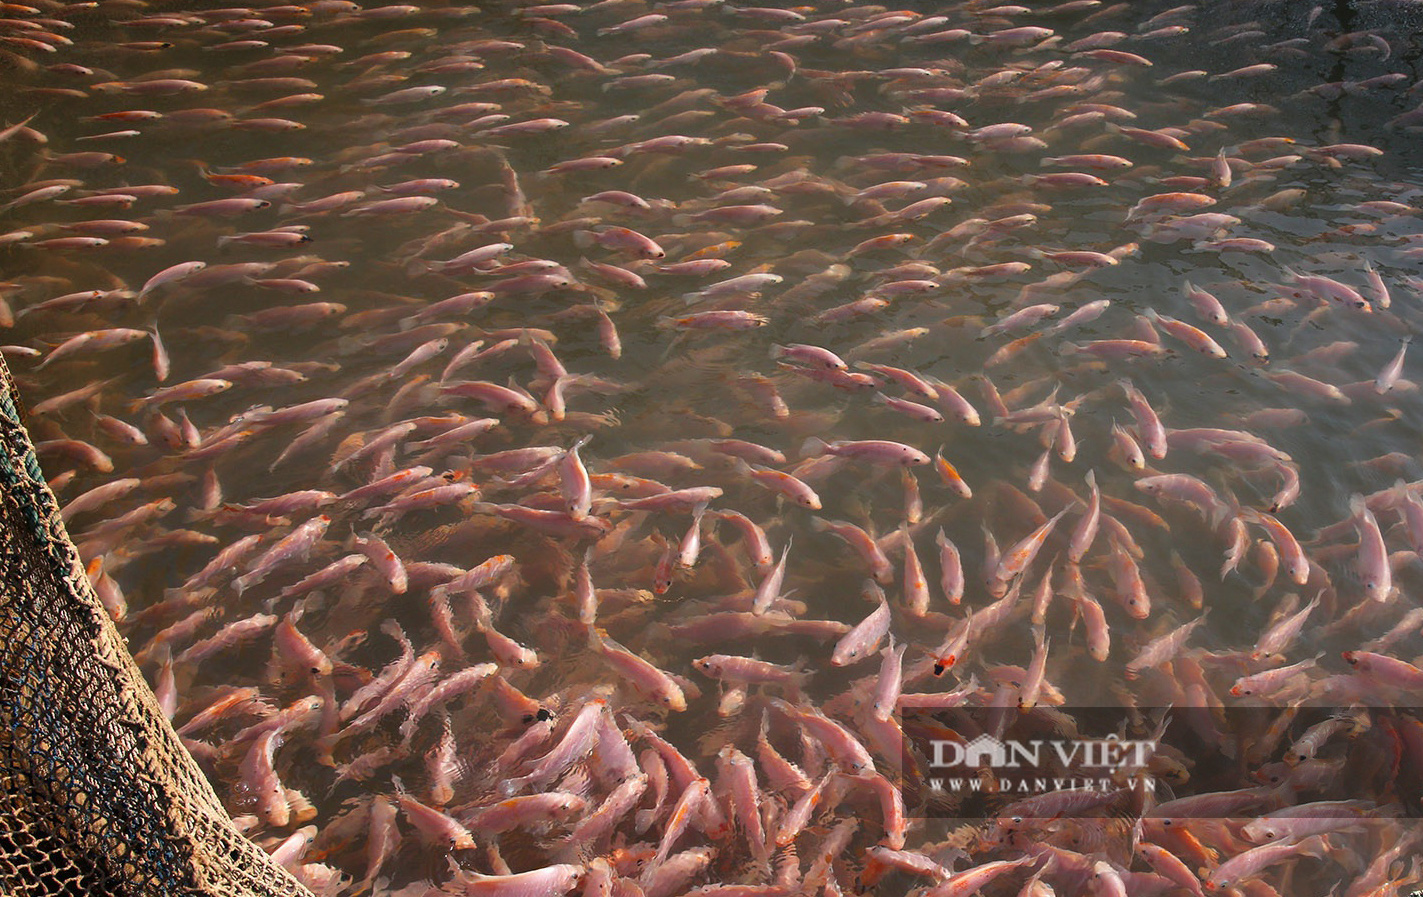 Dân nuôi cá trên sông Đà hút cát để cứu cá do nước sông cạn - Ảnh 10.